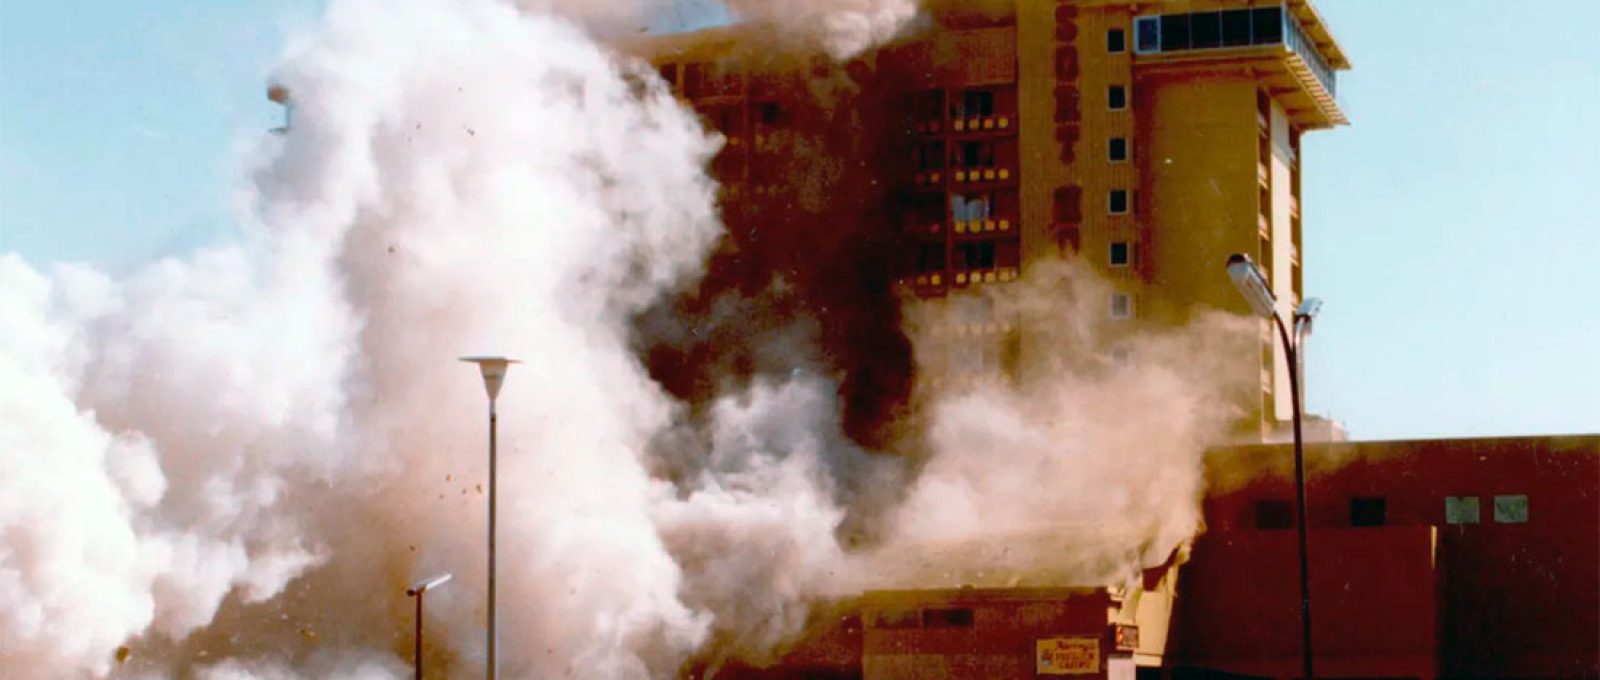 Bomba fabricada por criminosos explode no Harveys Resort Hotel em Stateline, Nevada, às margens do Lago Tahoe, em agosto de 1980 (Bill Jonkey/FBI).